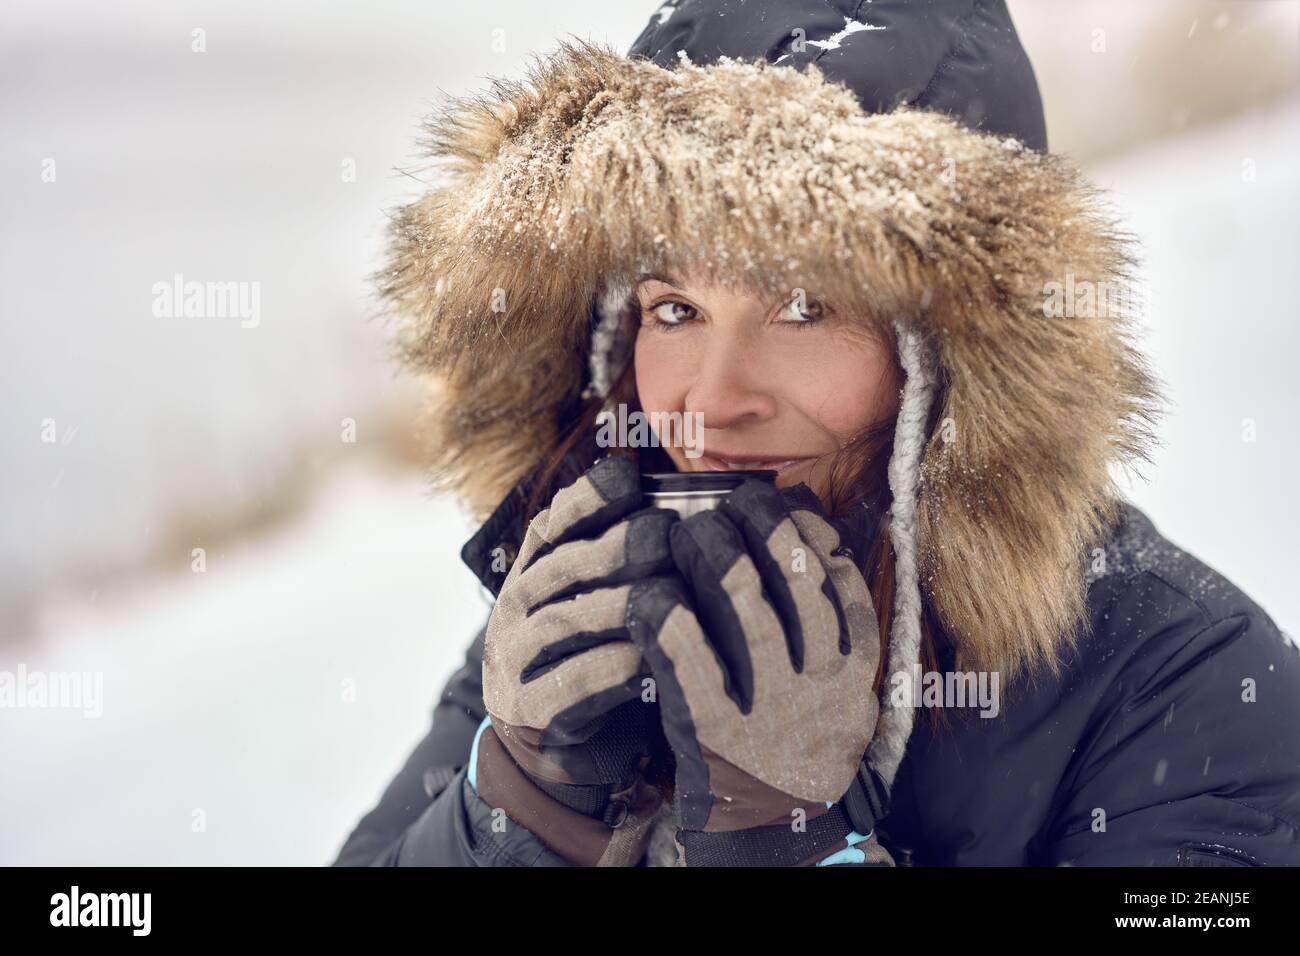 Felice donna sorridente che indossa una giacca con cappuccio rifinita in pelliccia godendo una tazza di caffè si è cullata nelle sue mani guanto all'aperto nella neve d'inverno in un concetto di t Foto Stock